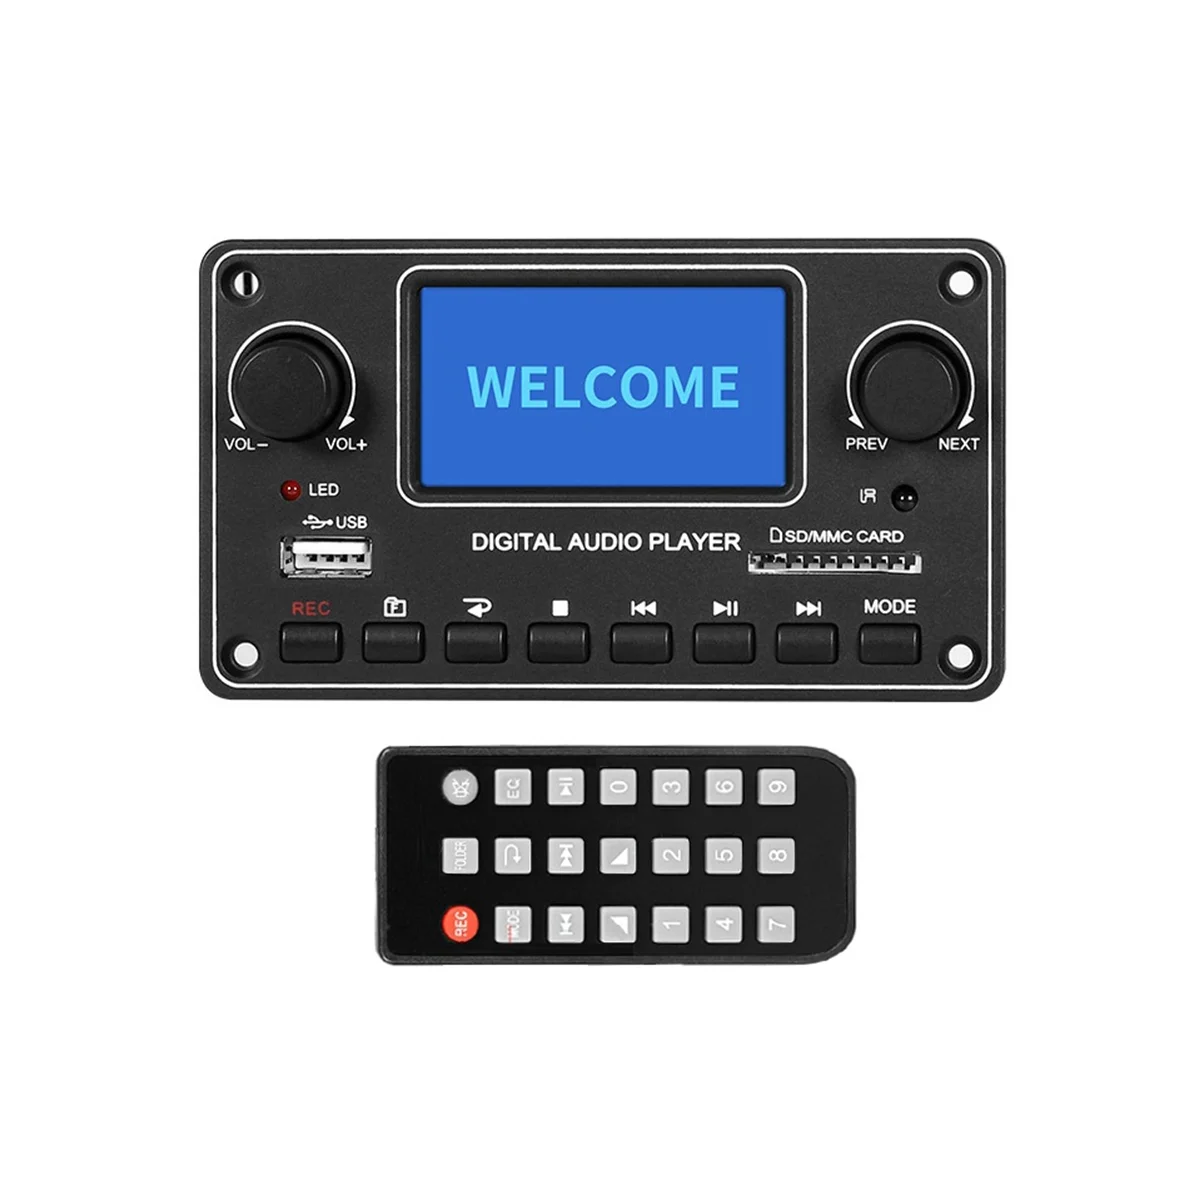 

ЖК-модуль MP3-плеера 28X6 4 дисплей Bluetooth цифровой аудио декодер плата TDM157 USB SD BT FM для автомобиля домашний усилитель